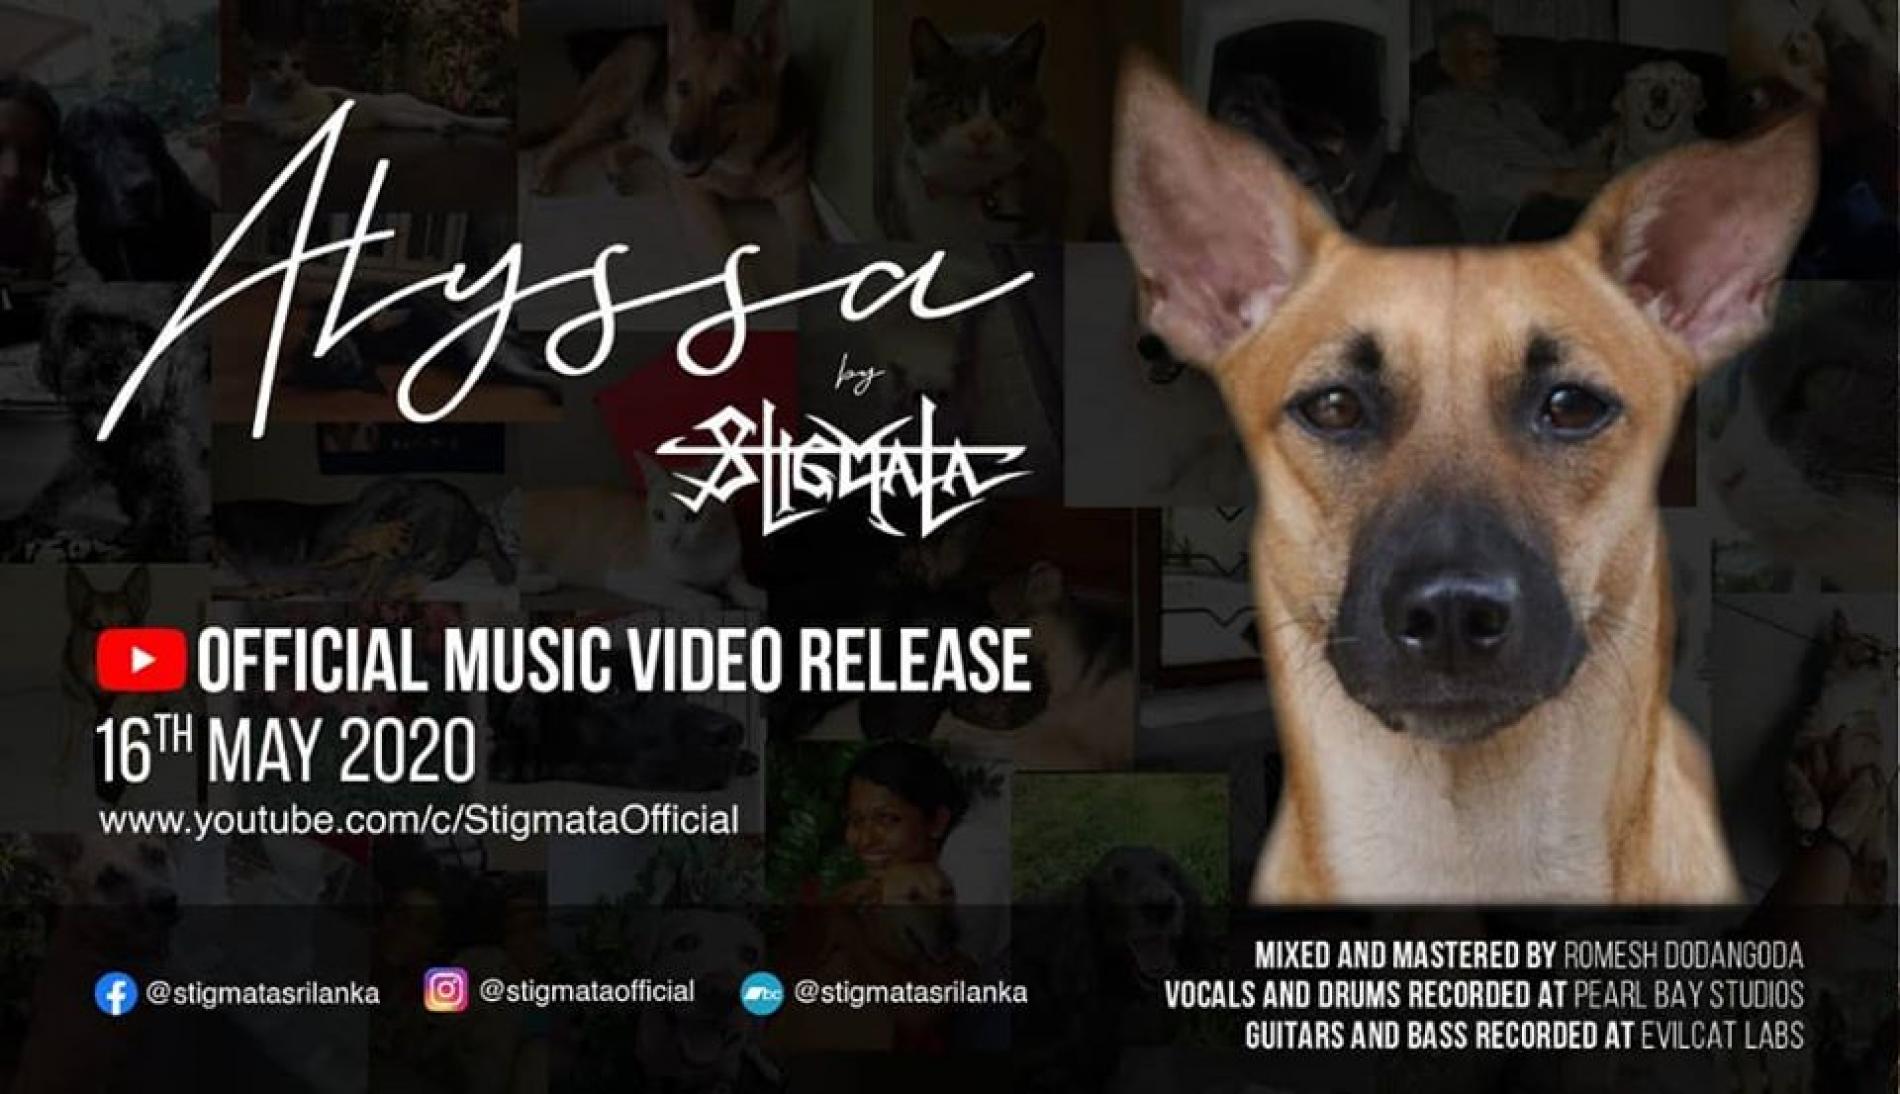 Stigmata Announces The ‘Alyssa’ Video Release